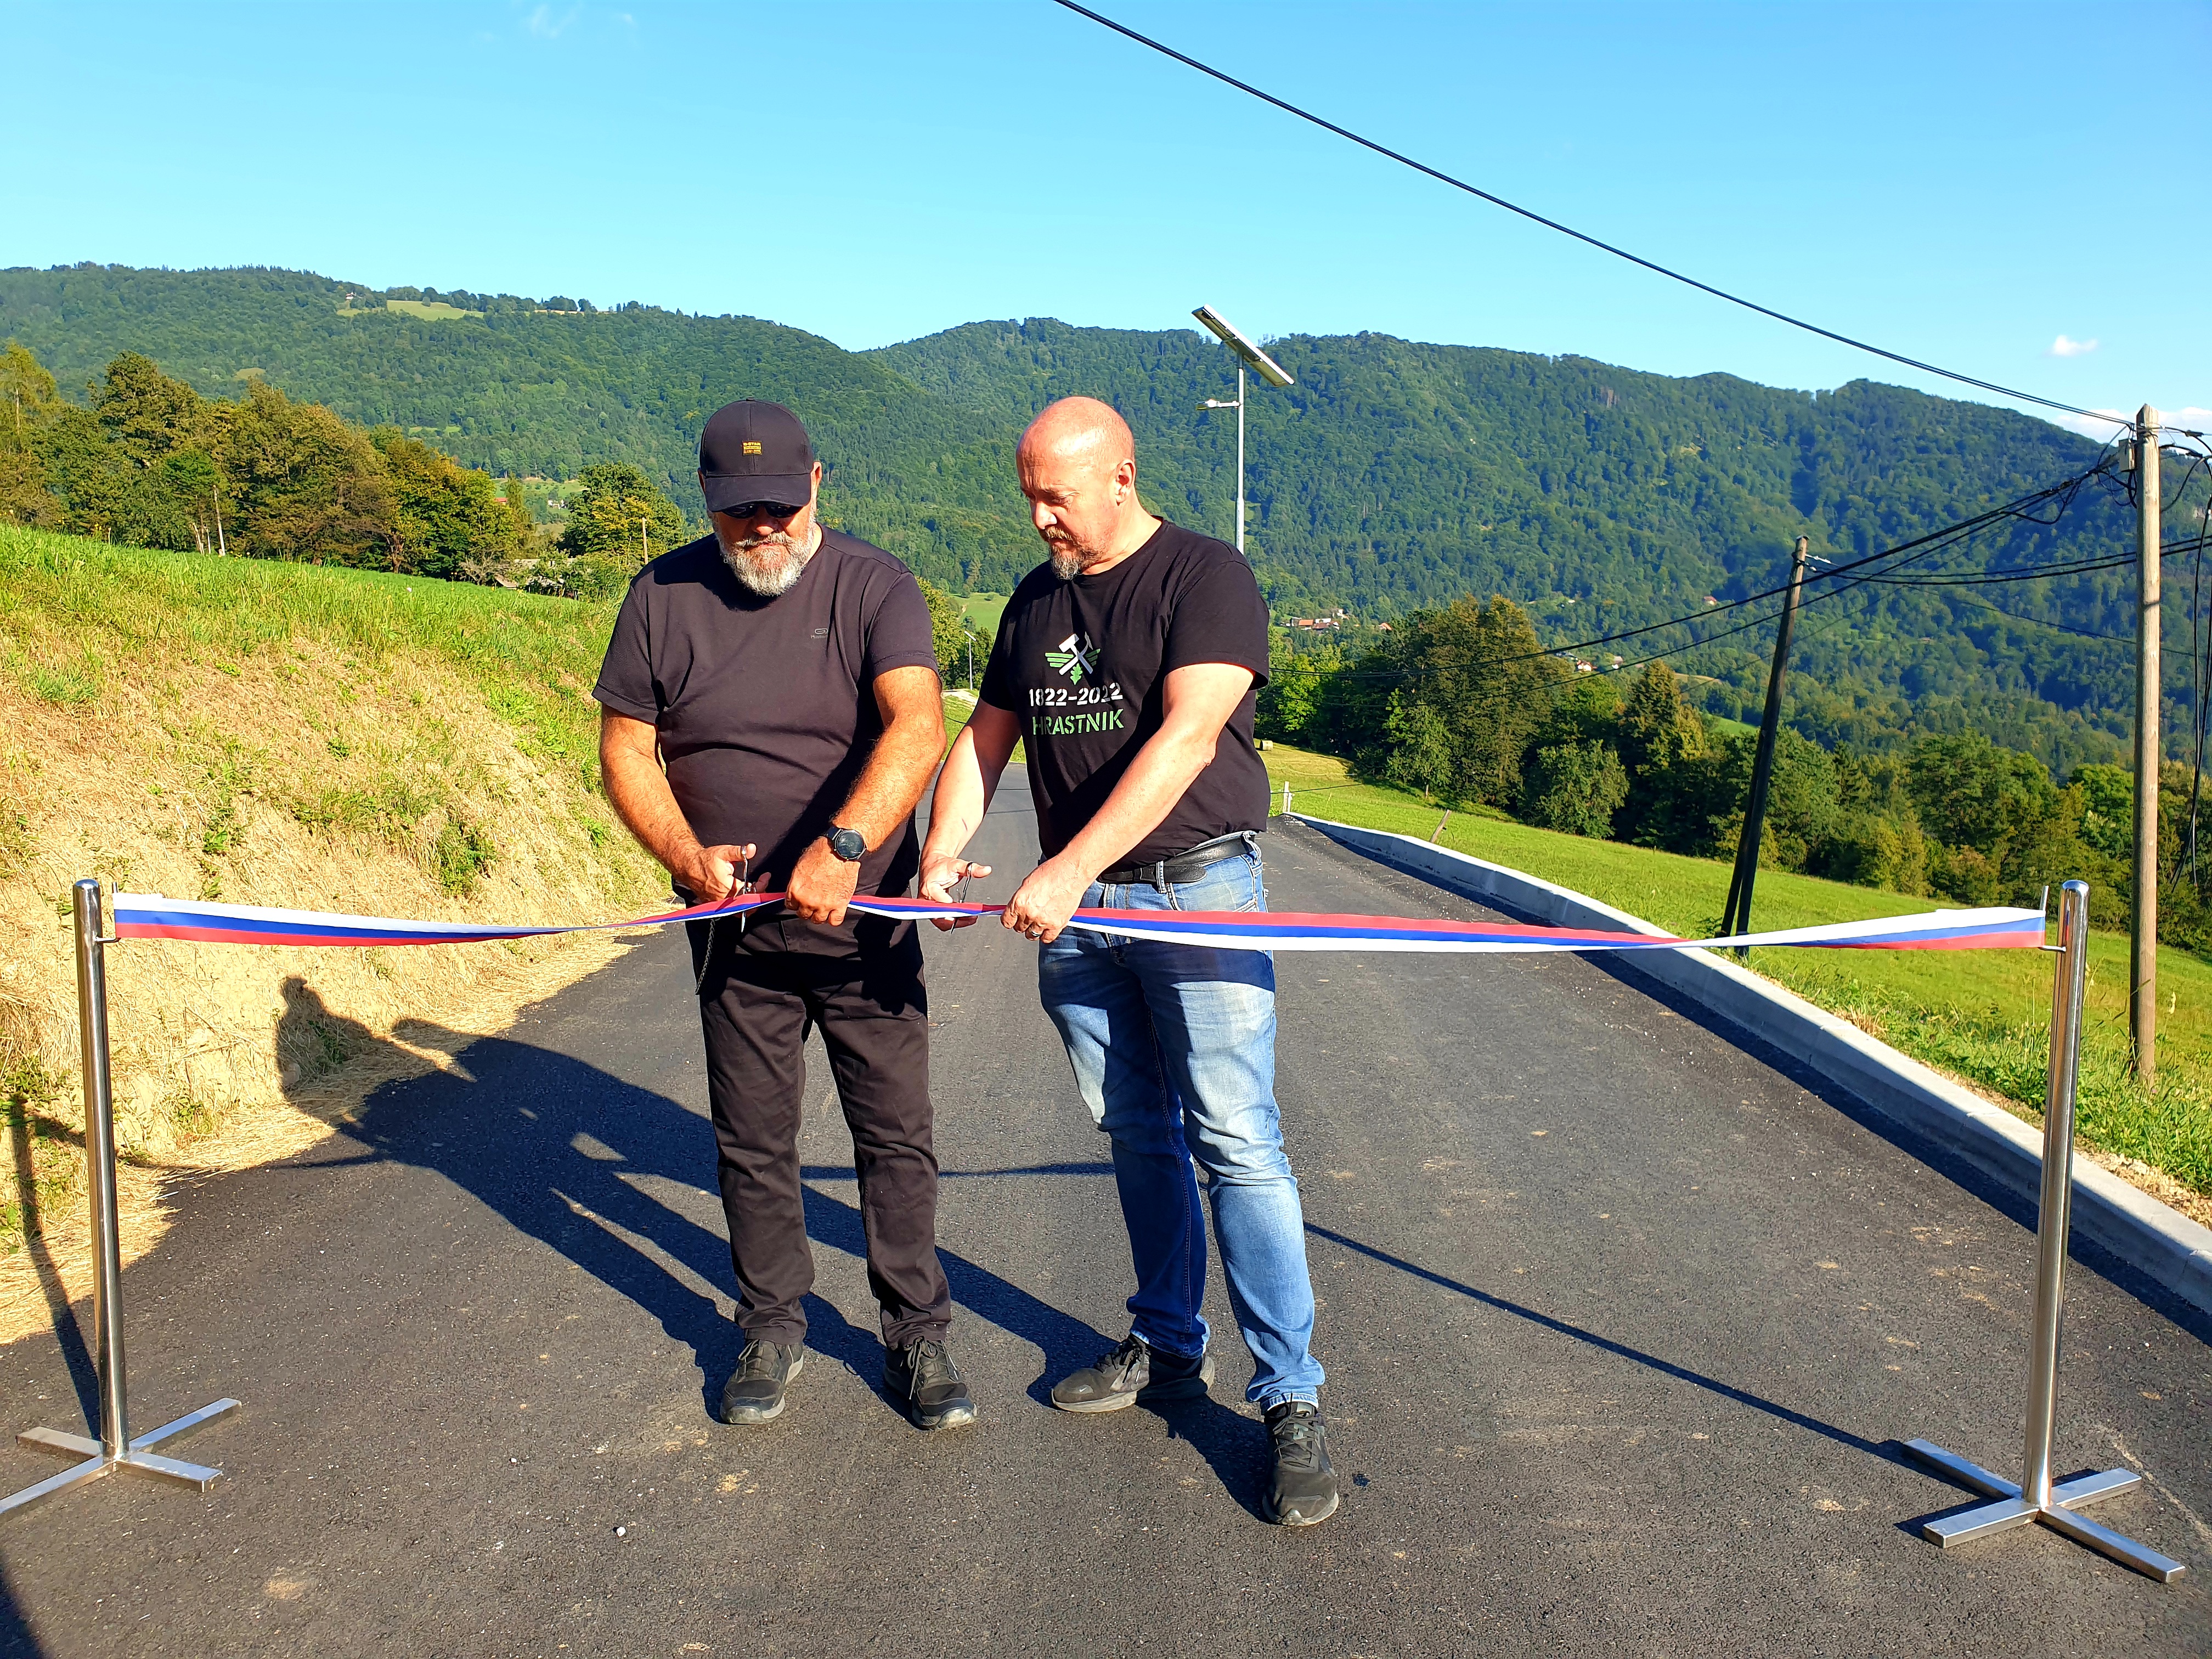 Otvoritveni trak sta prerezala župan Zoran Poznič in predsednik krajevne skupnosti Matej Kuhar.